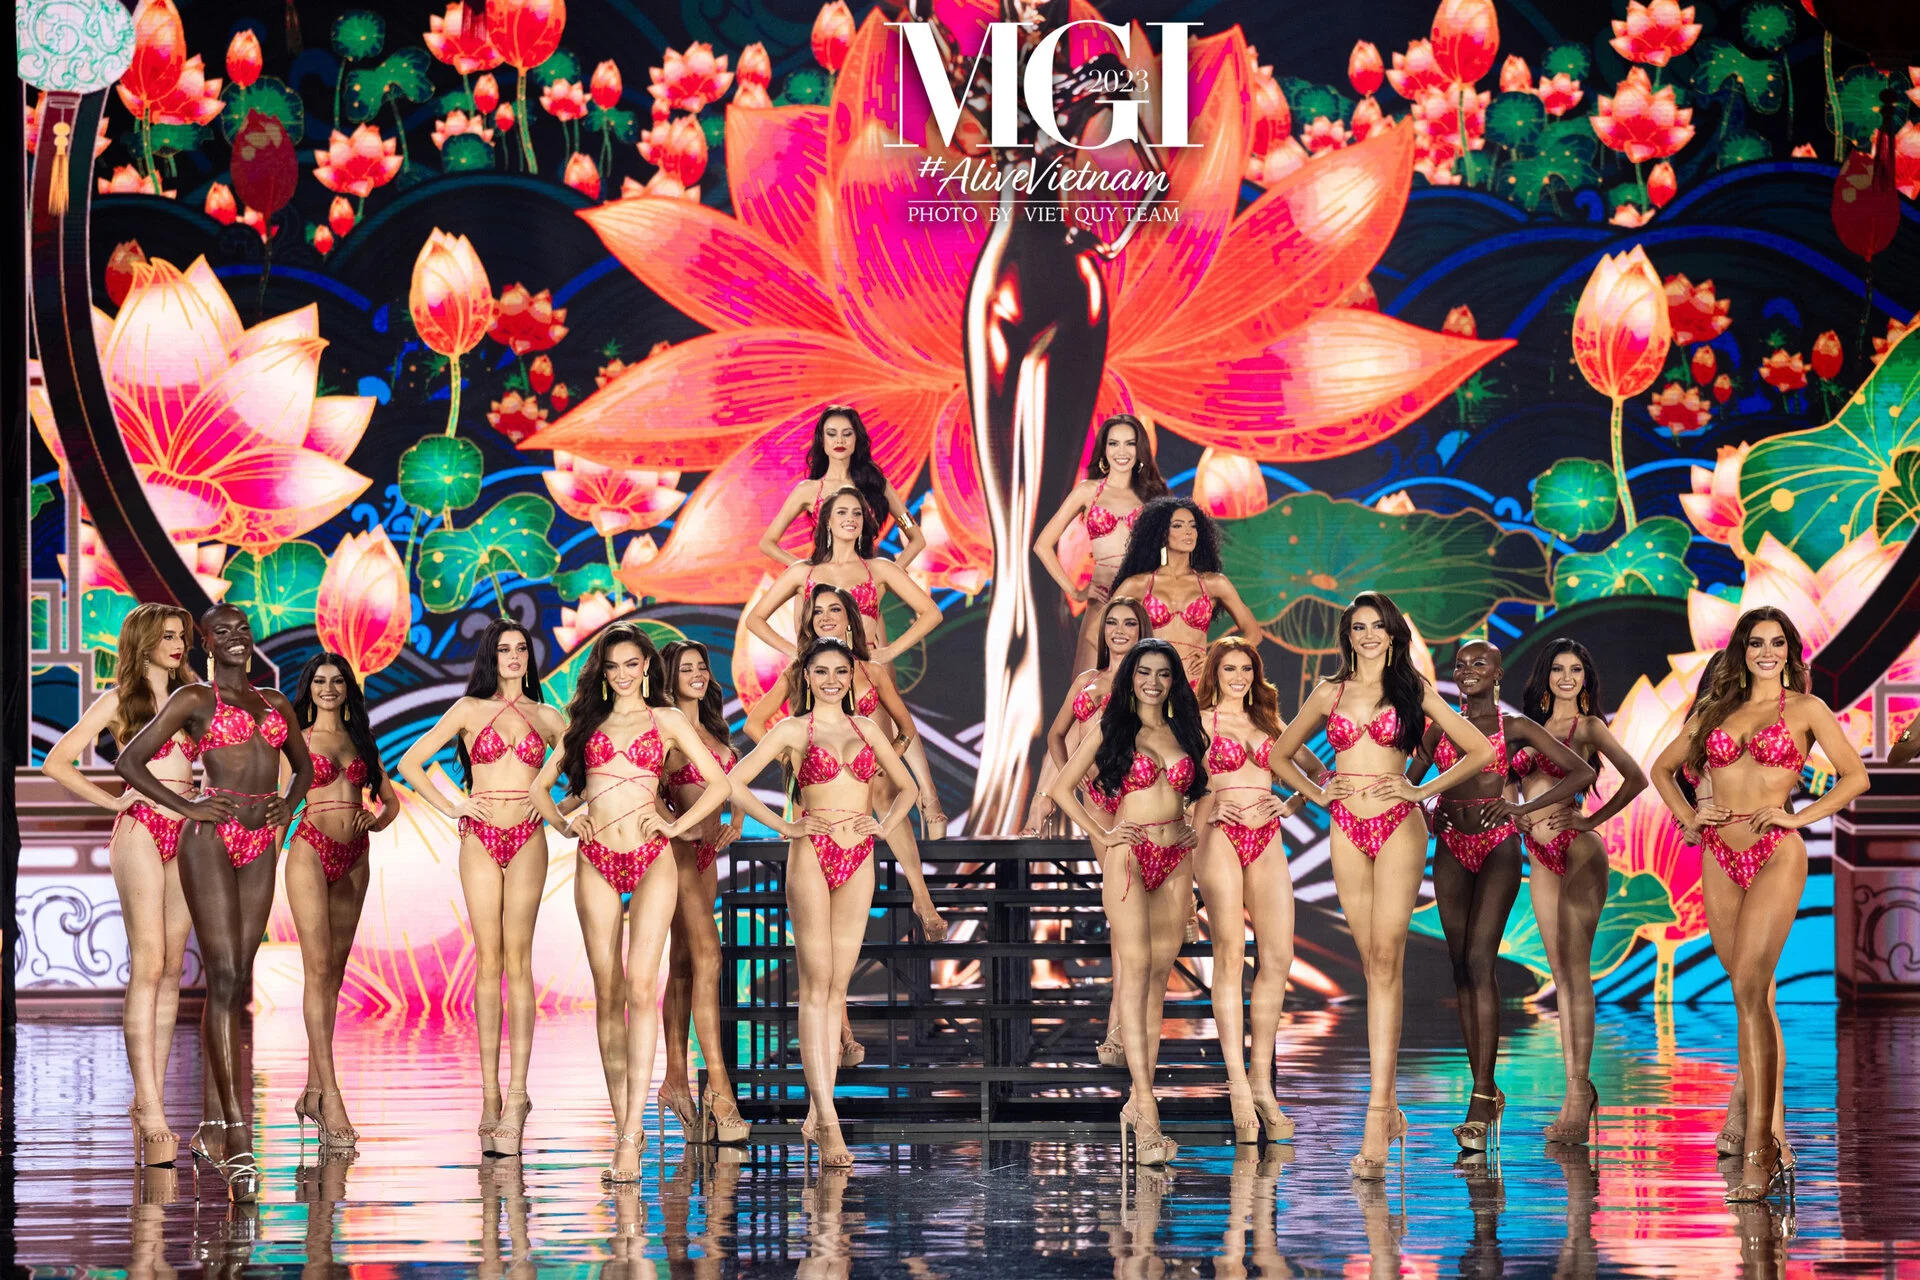 Các cô gái xuất sắc lọt Top 20 xuất hiện với màn trình diễn bikini nóng bỏng. Với màn hình LED có điểm xuyến hoa sen cùng với không gian đầy nét văn hoá Việt Nam từ mái vòm, đèn lồng, hoạ tiết kiến trúc, sân khấu chung kết đề cao nét văn hoá của nước nhà.